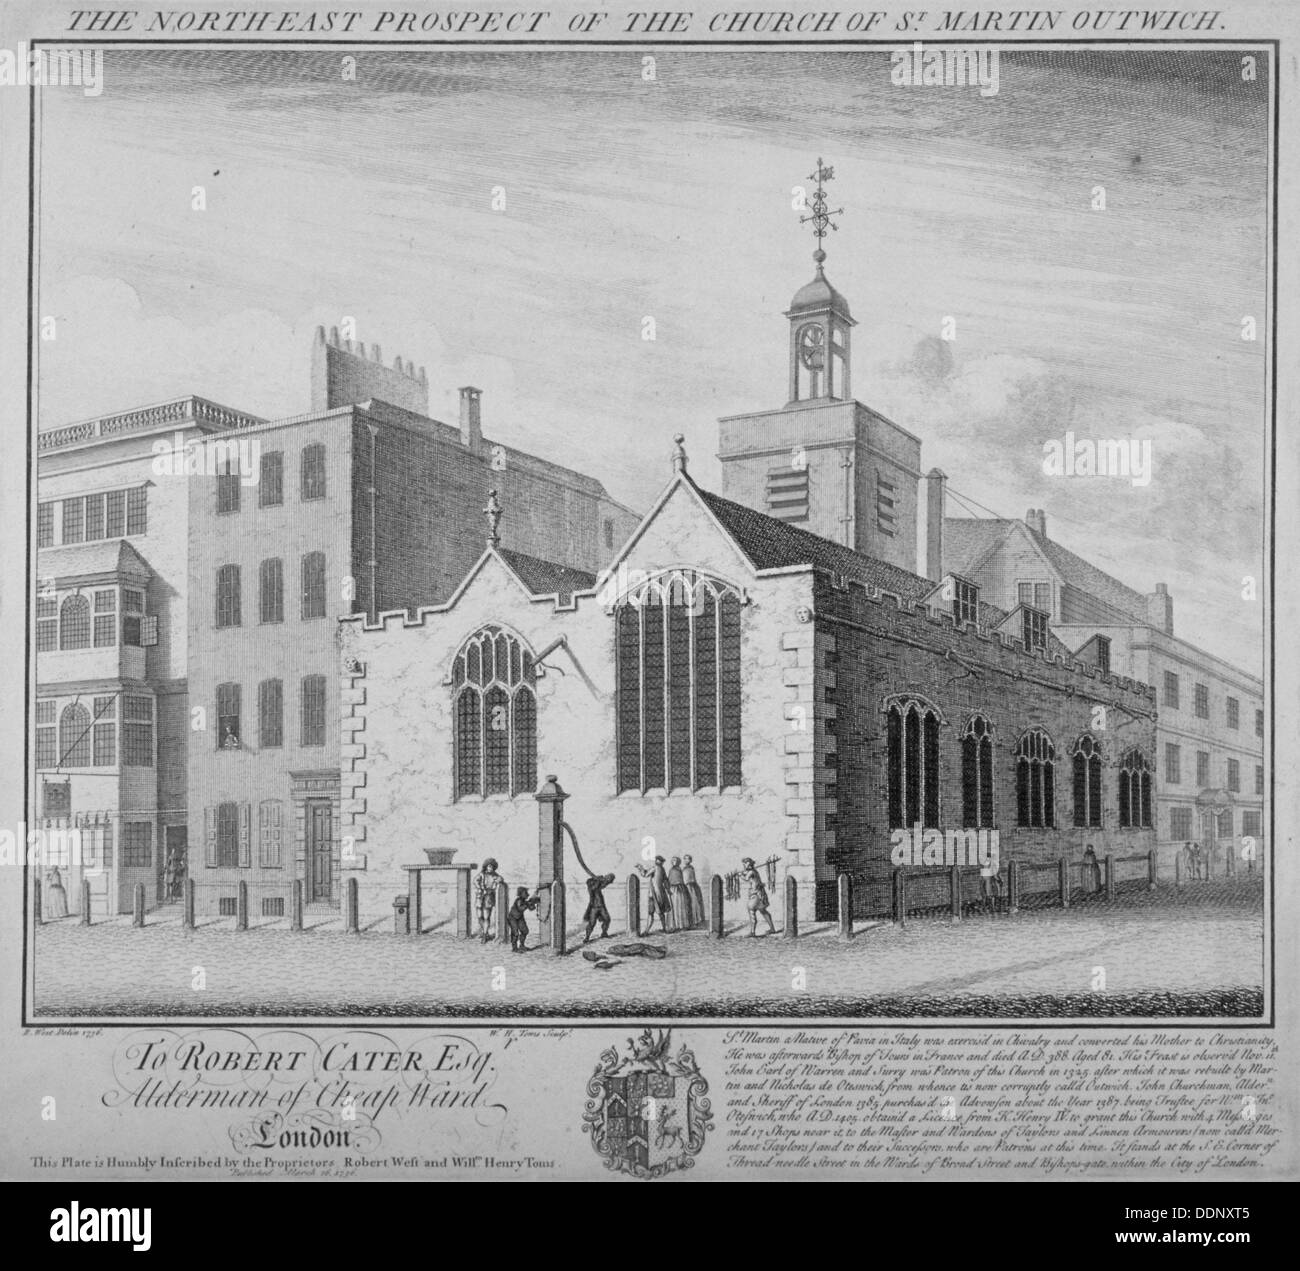 Nordost-Blick auf die Kirche von St. Martin Outwich, Threadneedle Street, City of London, 1736. Künstler: William Henry Toms Stockfoto